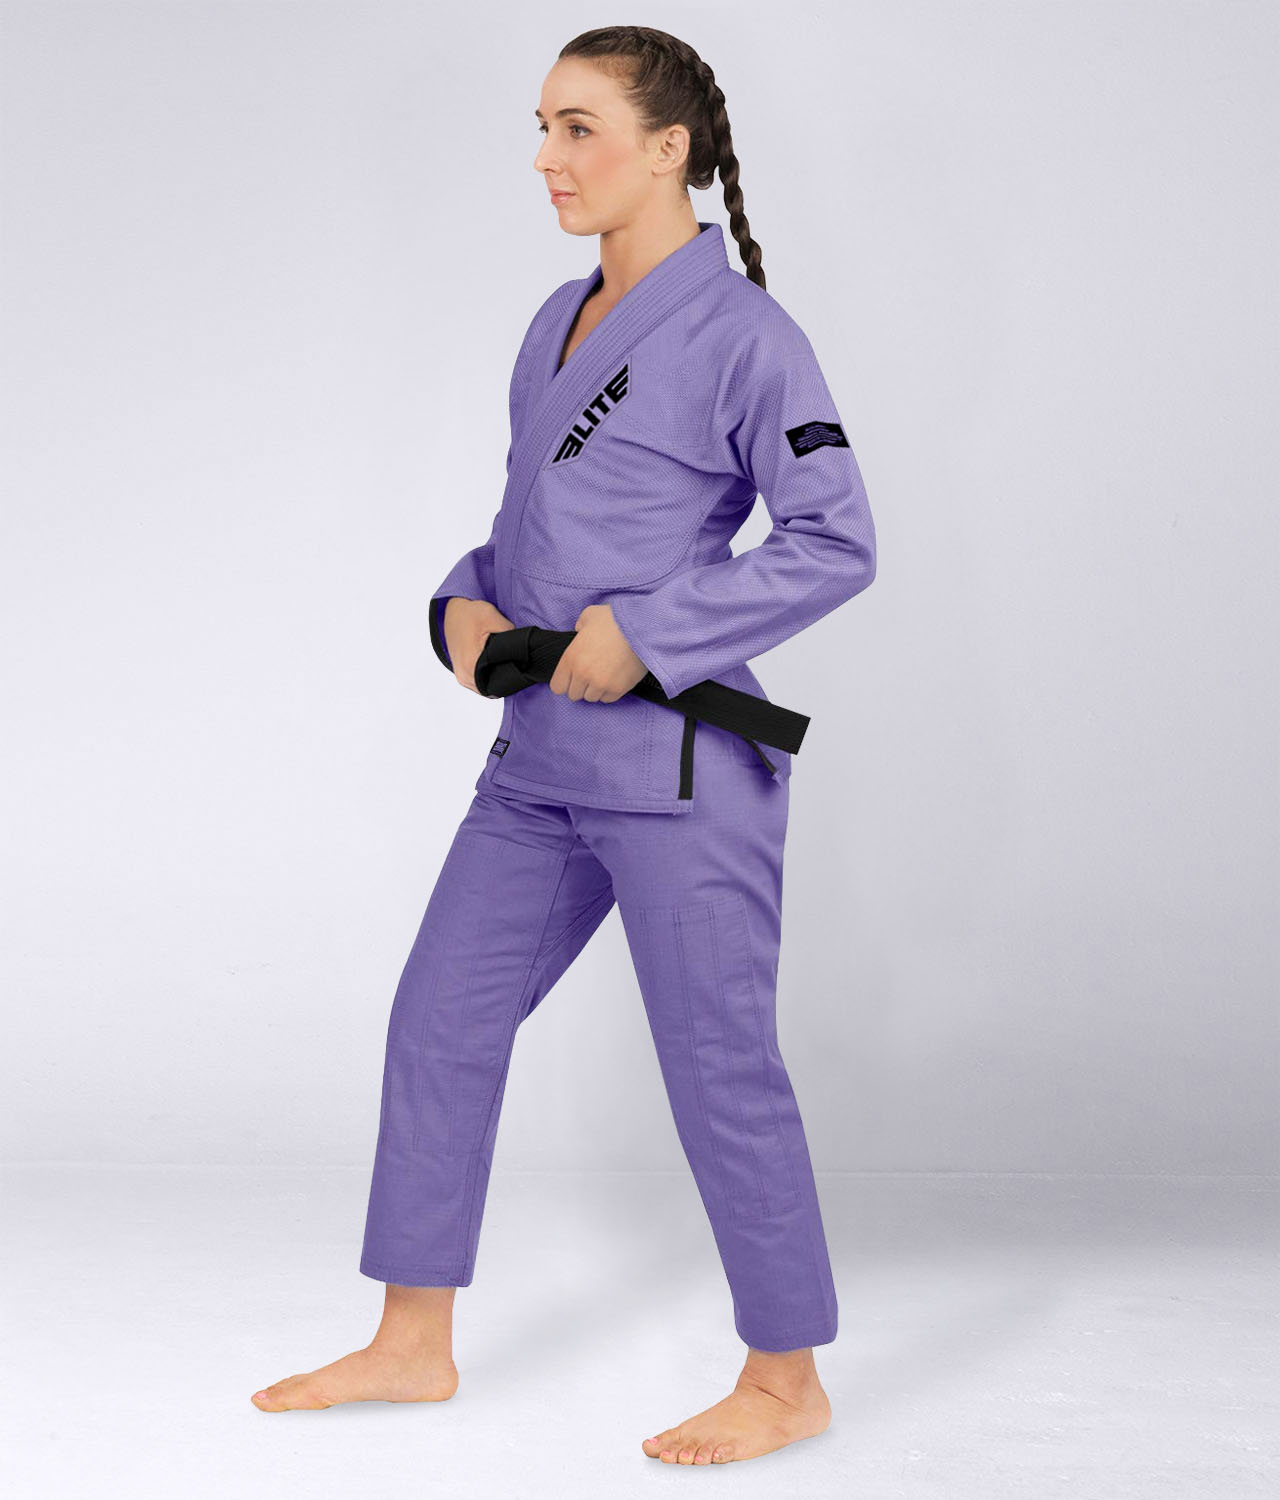 Elite Sports Women's Core Purple Brazilian Jiu Jitsu BJJ Gi Side View